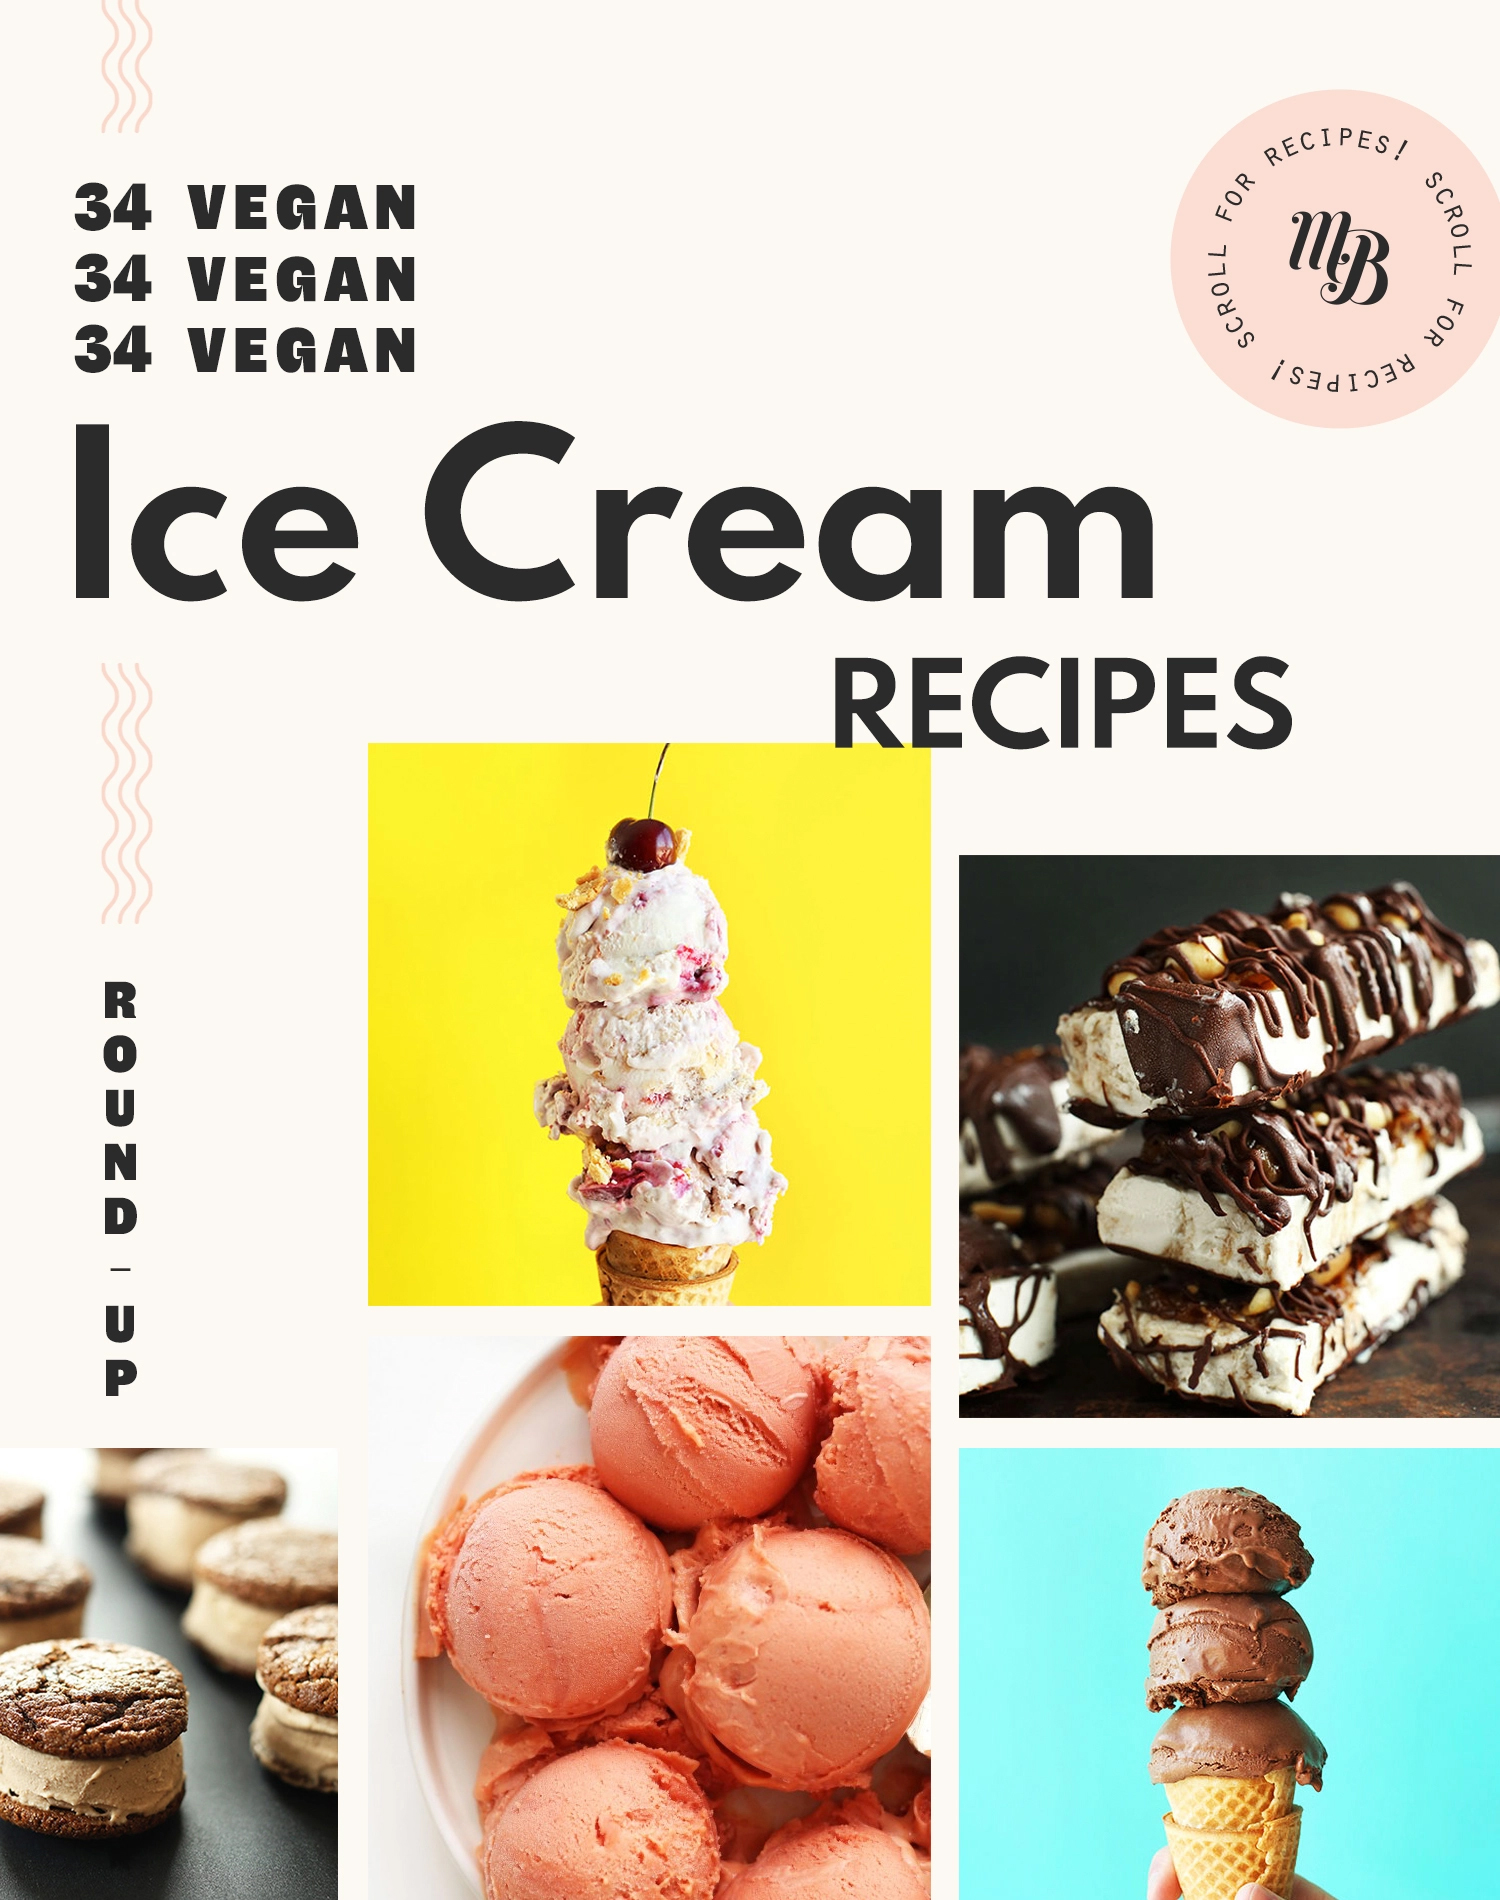 Assortment of vegan ice cream recipes